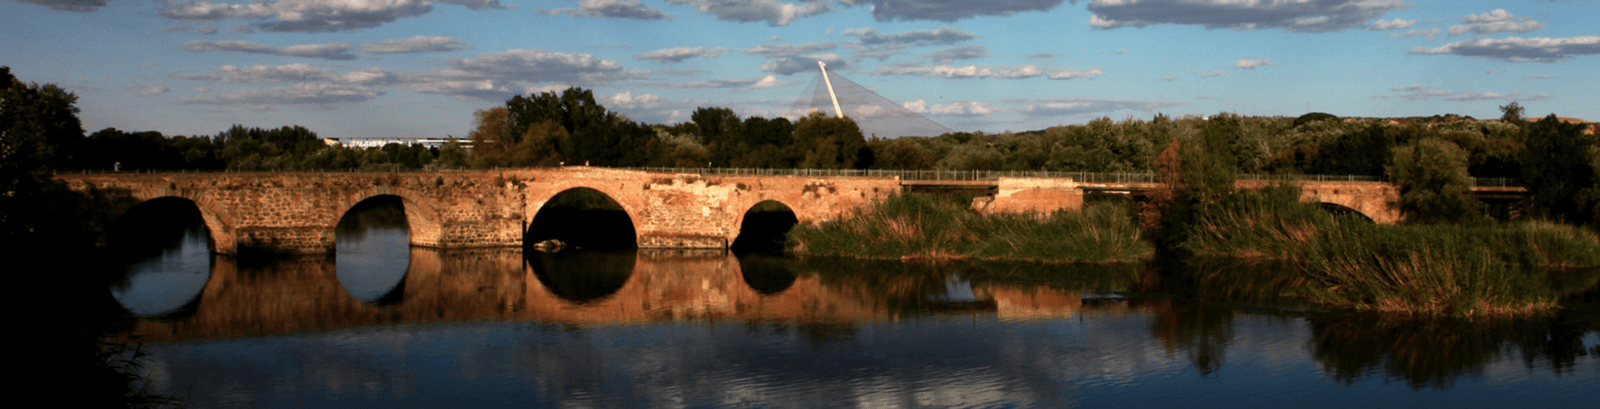 Puente Romano Talavera de la Reina - Orígenes de Europa